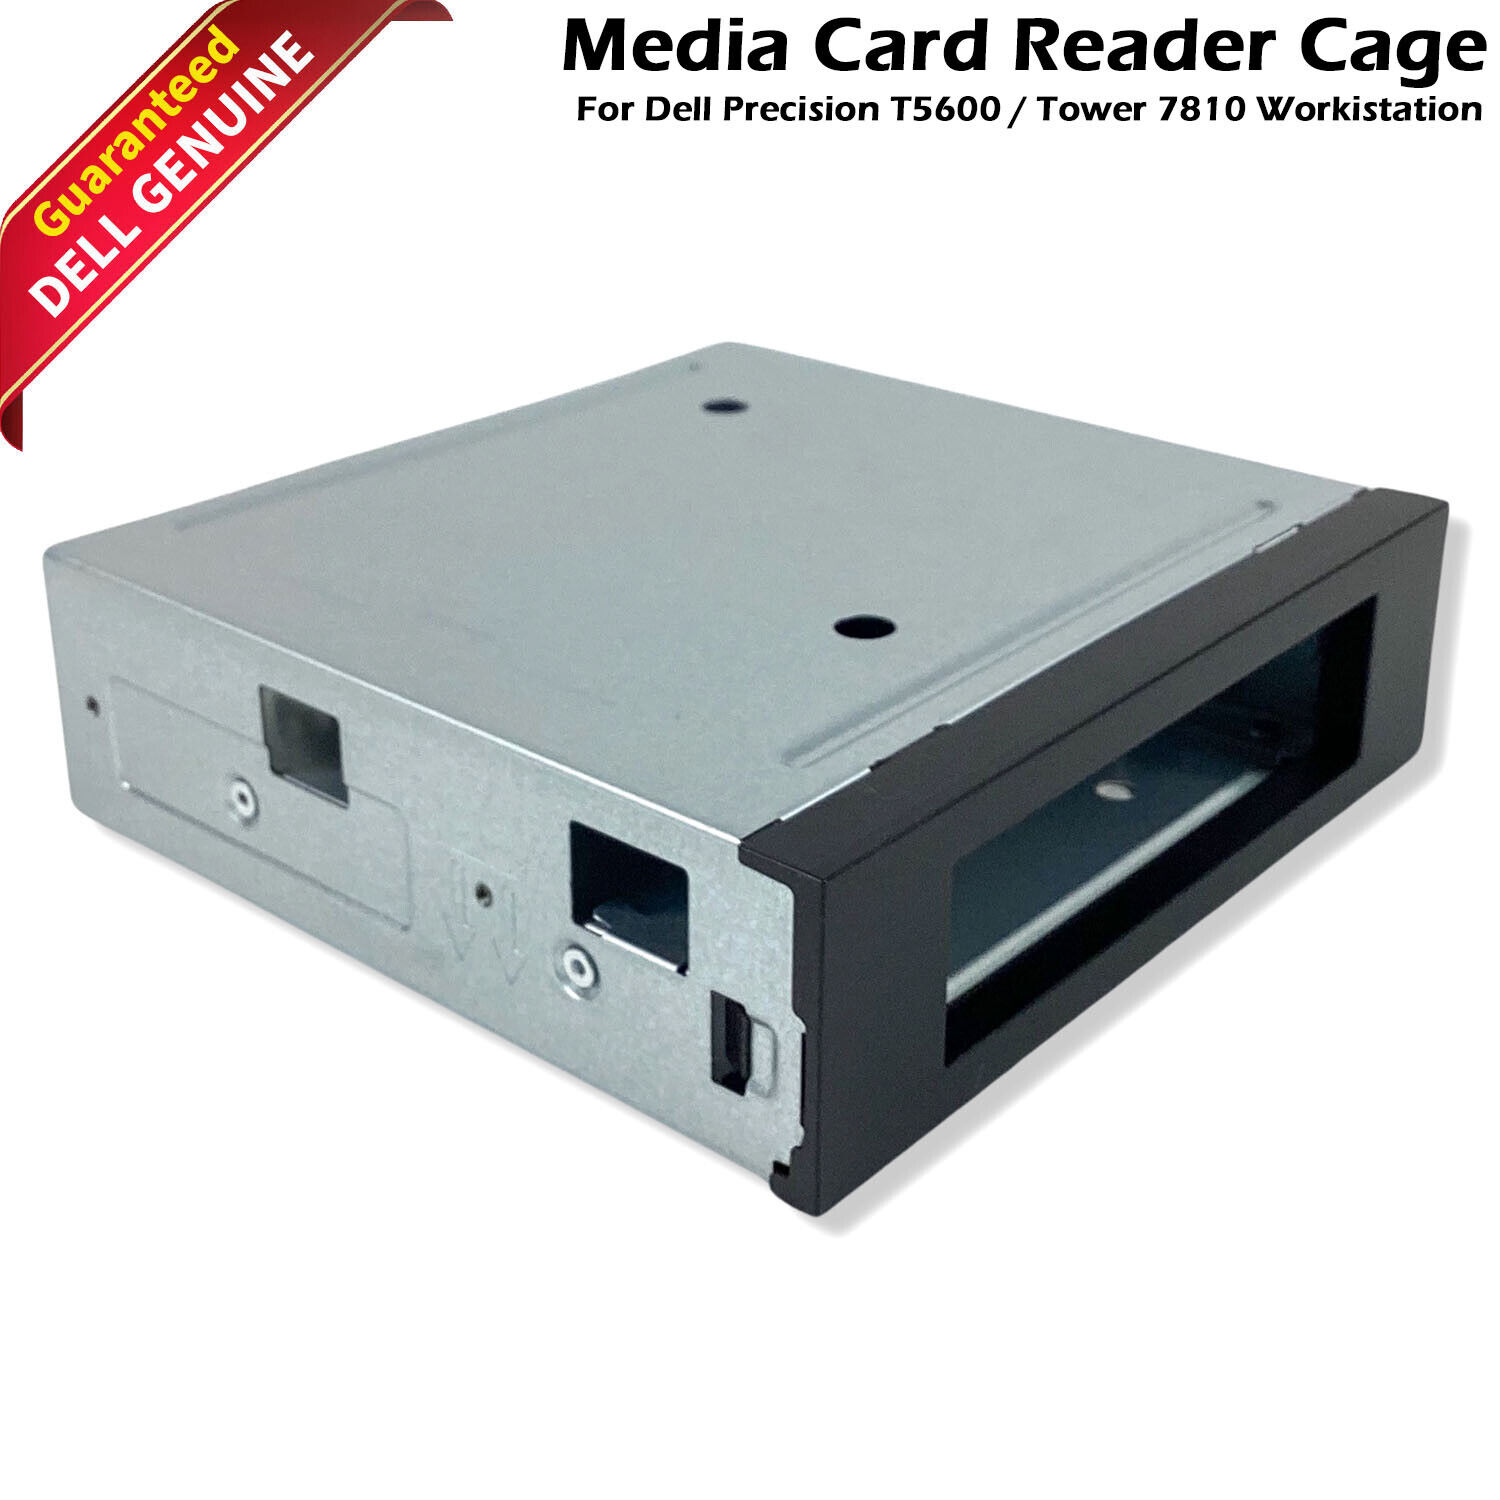 Genuine Dell Precision T5600 Media Card Reader Cage Floppy Drive Tray HH164